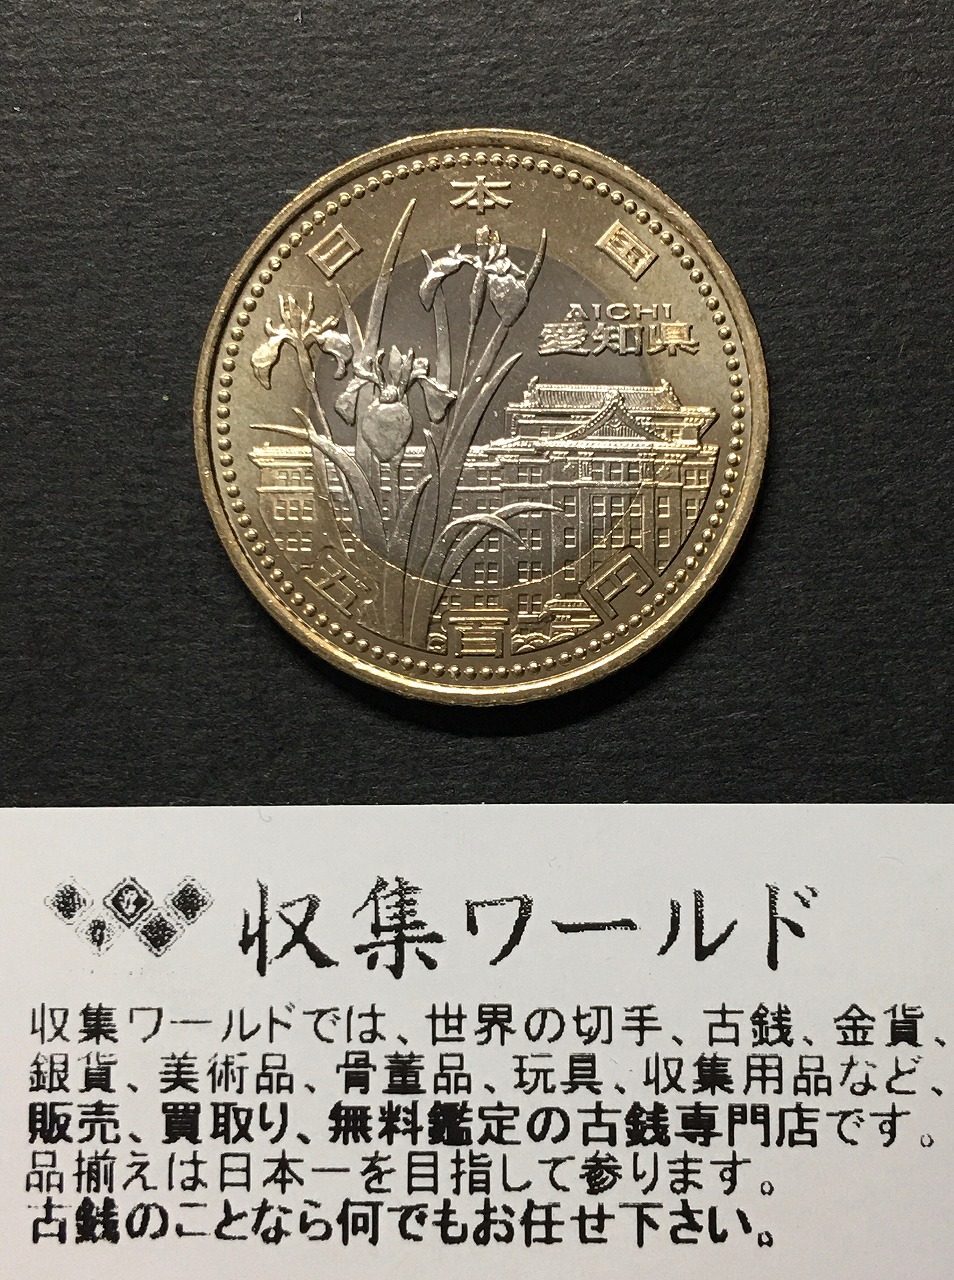 地方自治法施行60周年記念 500円バイカラー・クラッド貨幣 平成22年 